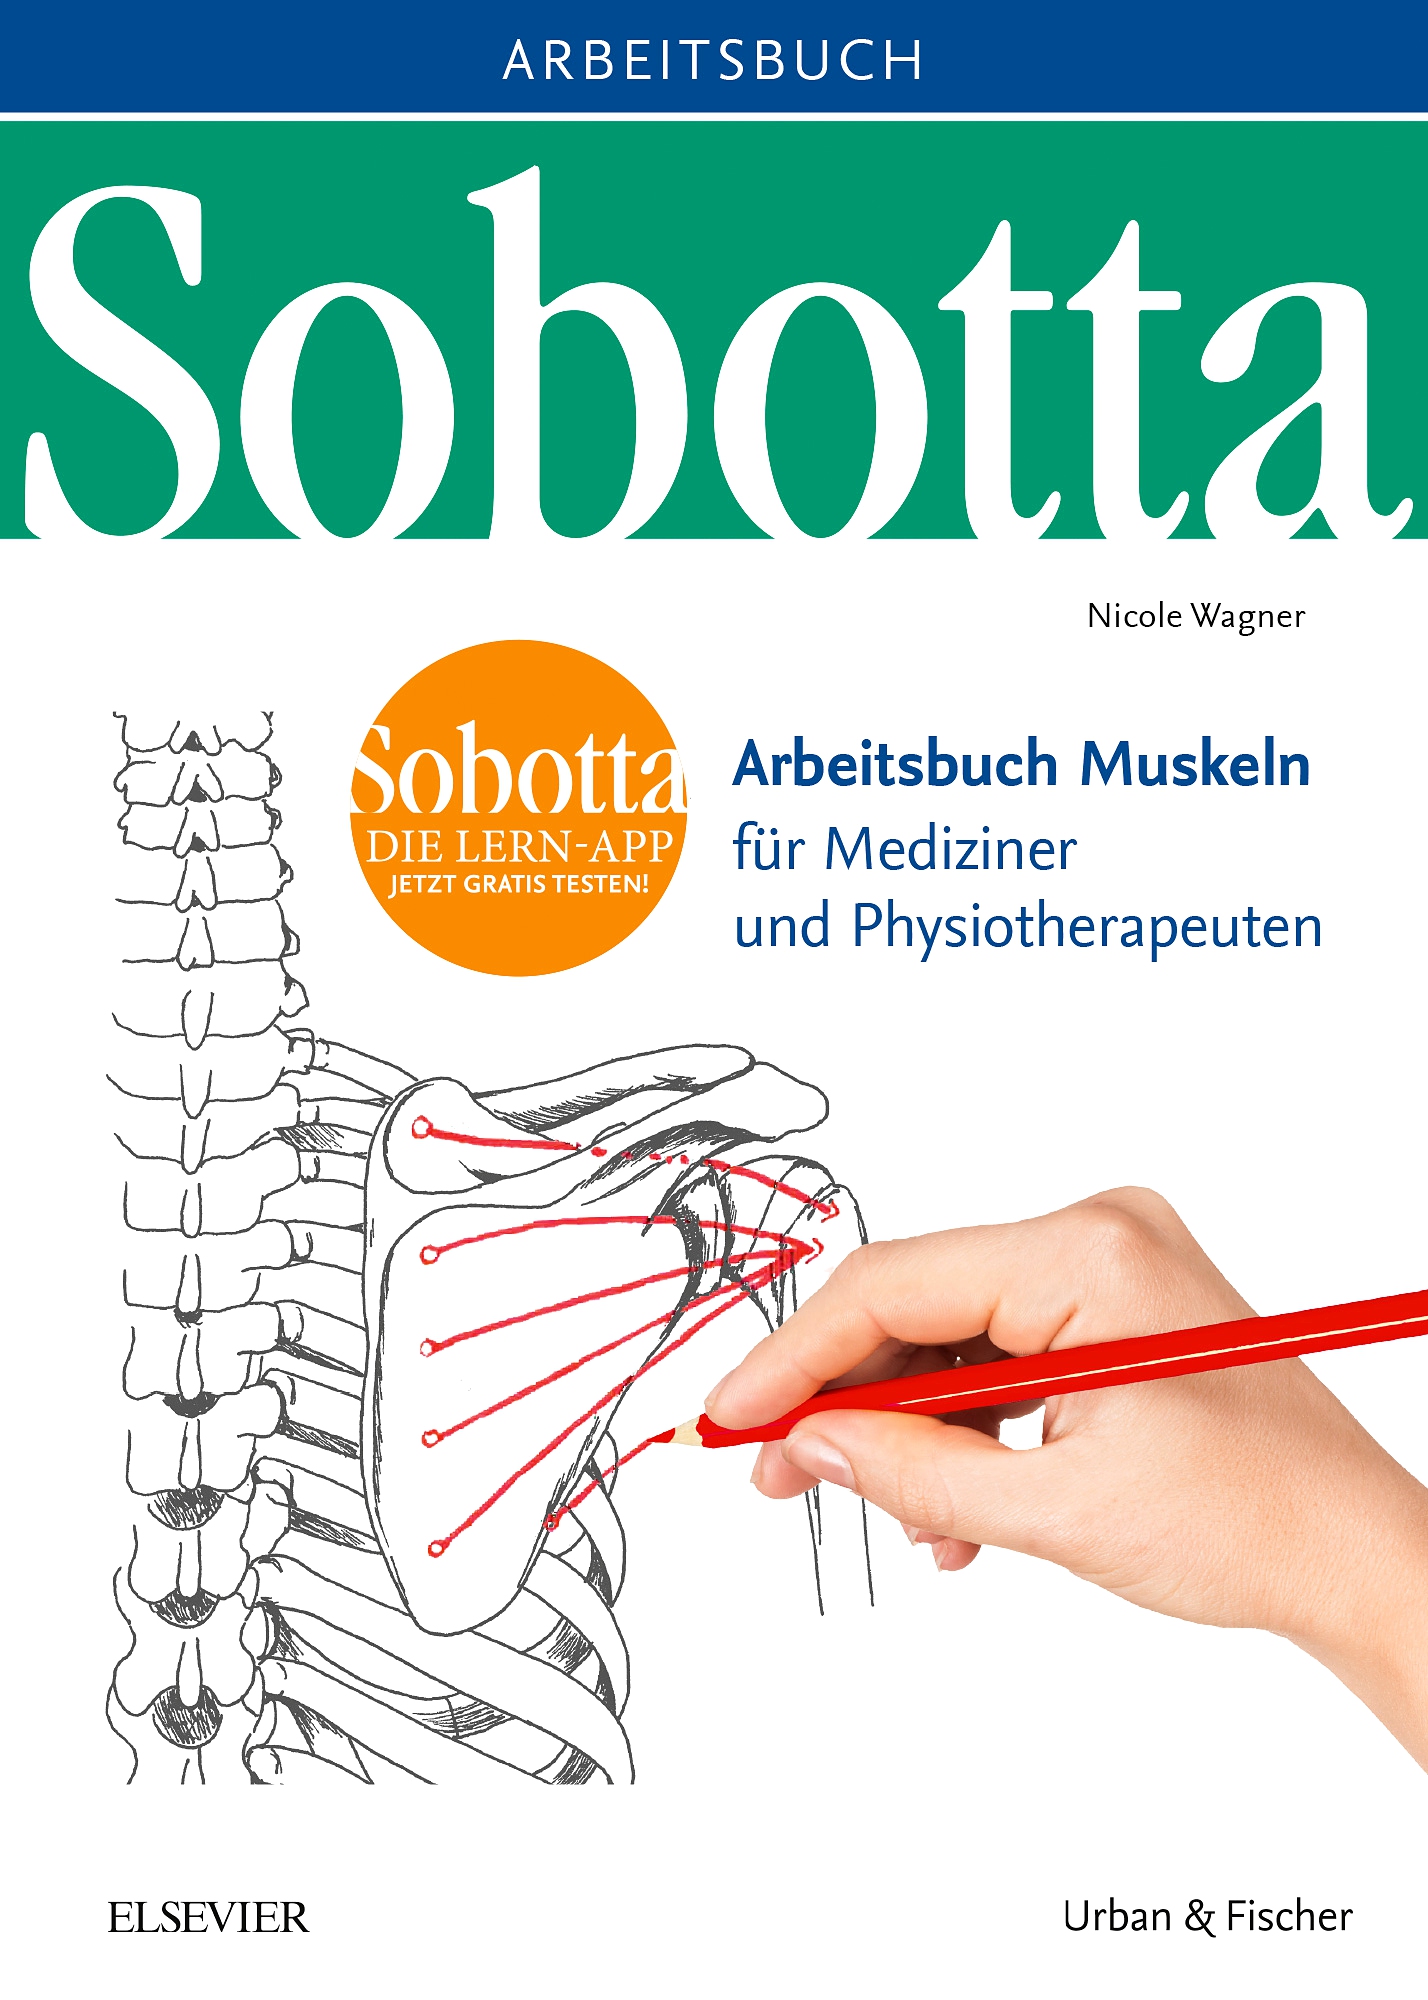 Sobotta Arbeitsbuch uskeln Arbeitsbuch für ediziner und Physiotherapeuten PDF